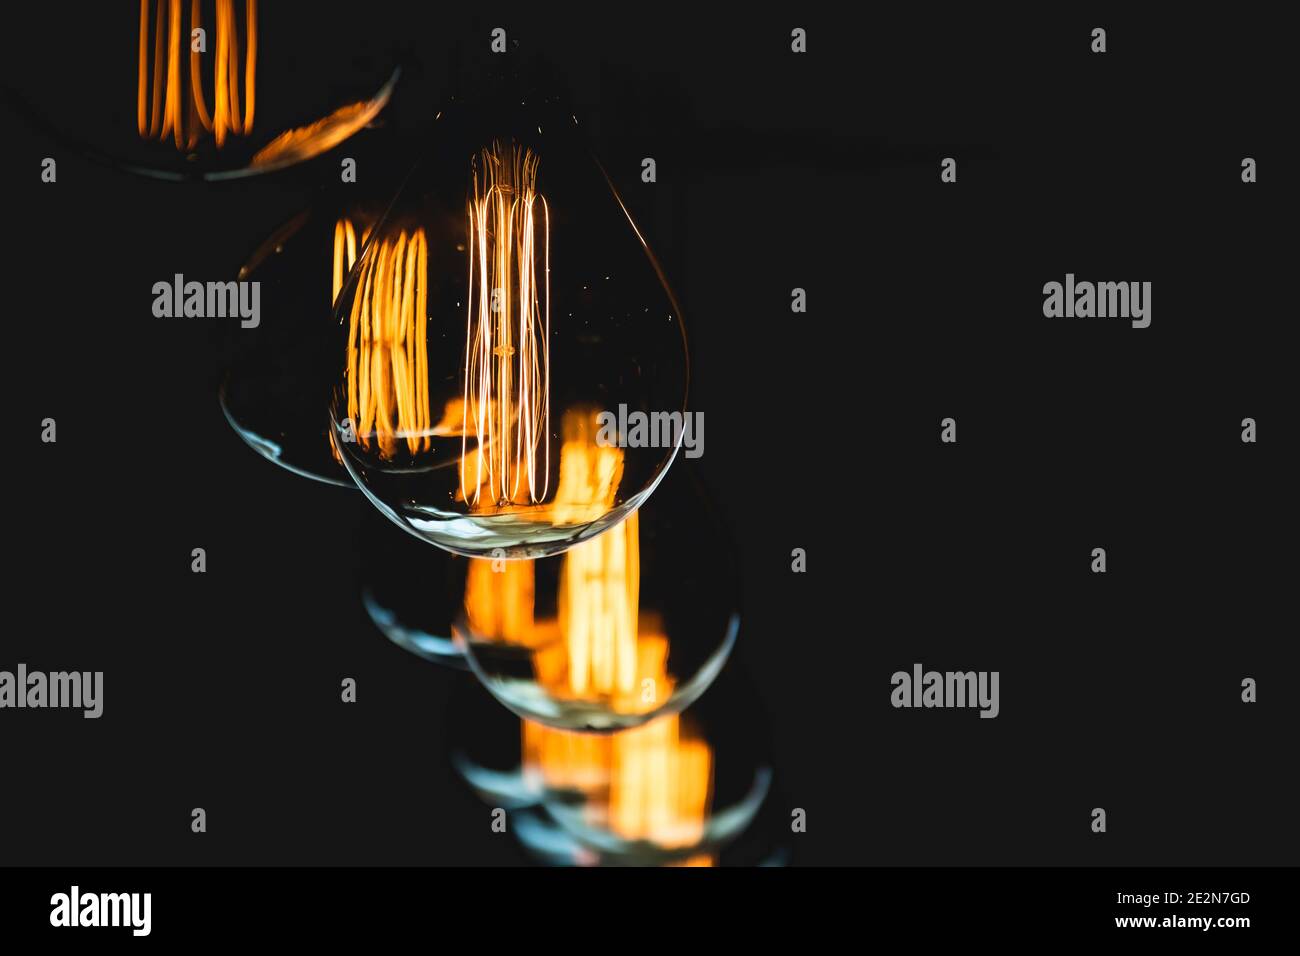 Filamenti immagini e fotografie stock ad alta risoluzione - Alamy